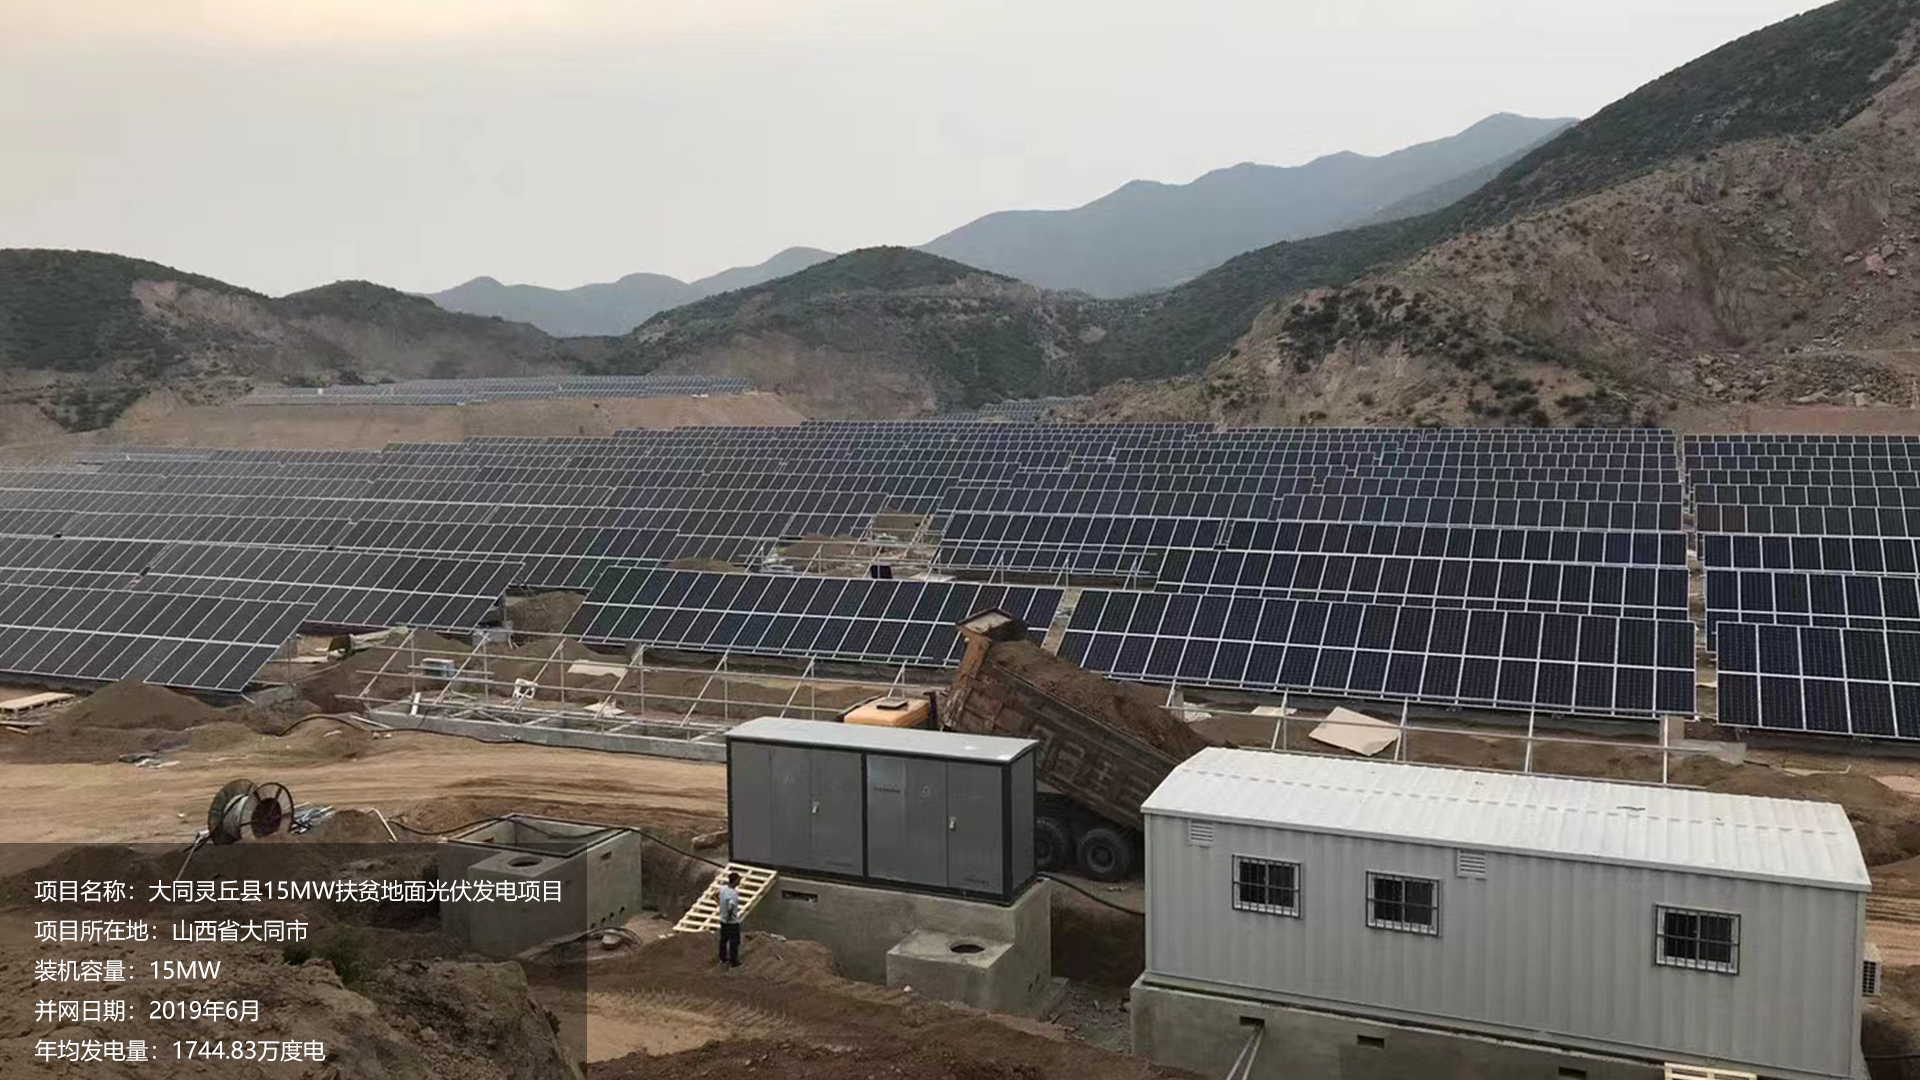 大同灵丘县扶贫地面项目总装机容量15MW，项目位于山西省大同市，于2019年6月并网发电，年均发电量约1750万度。